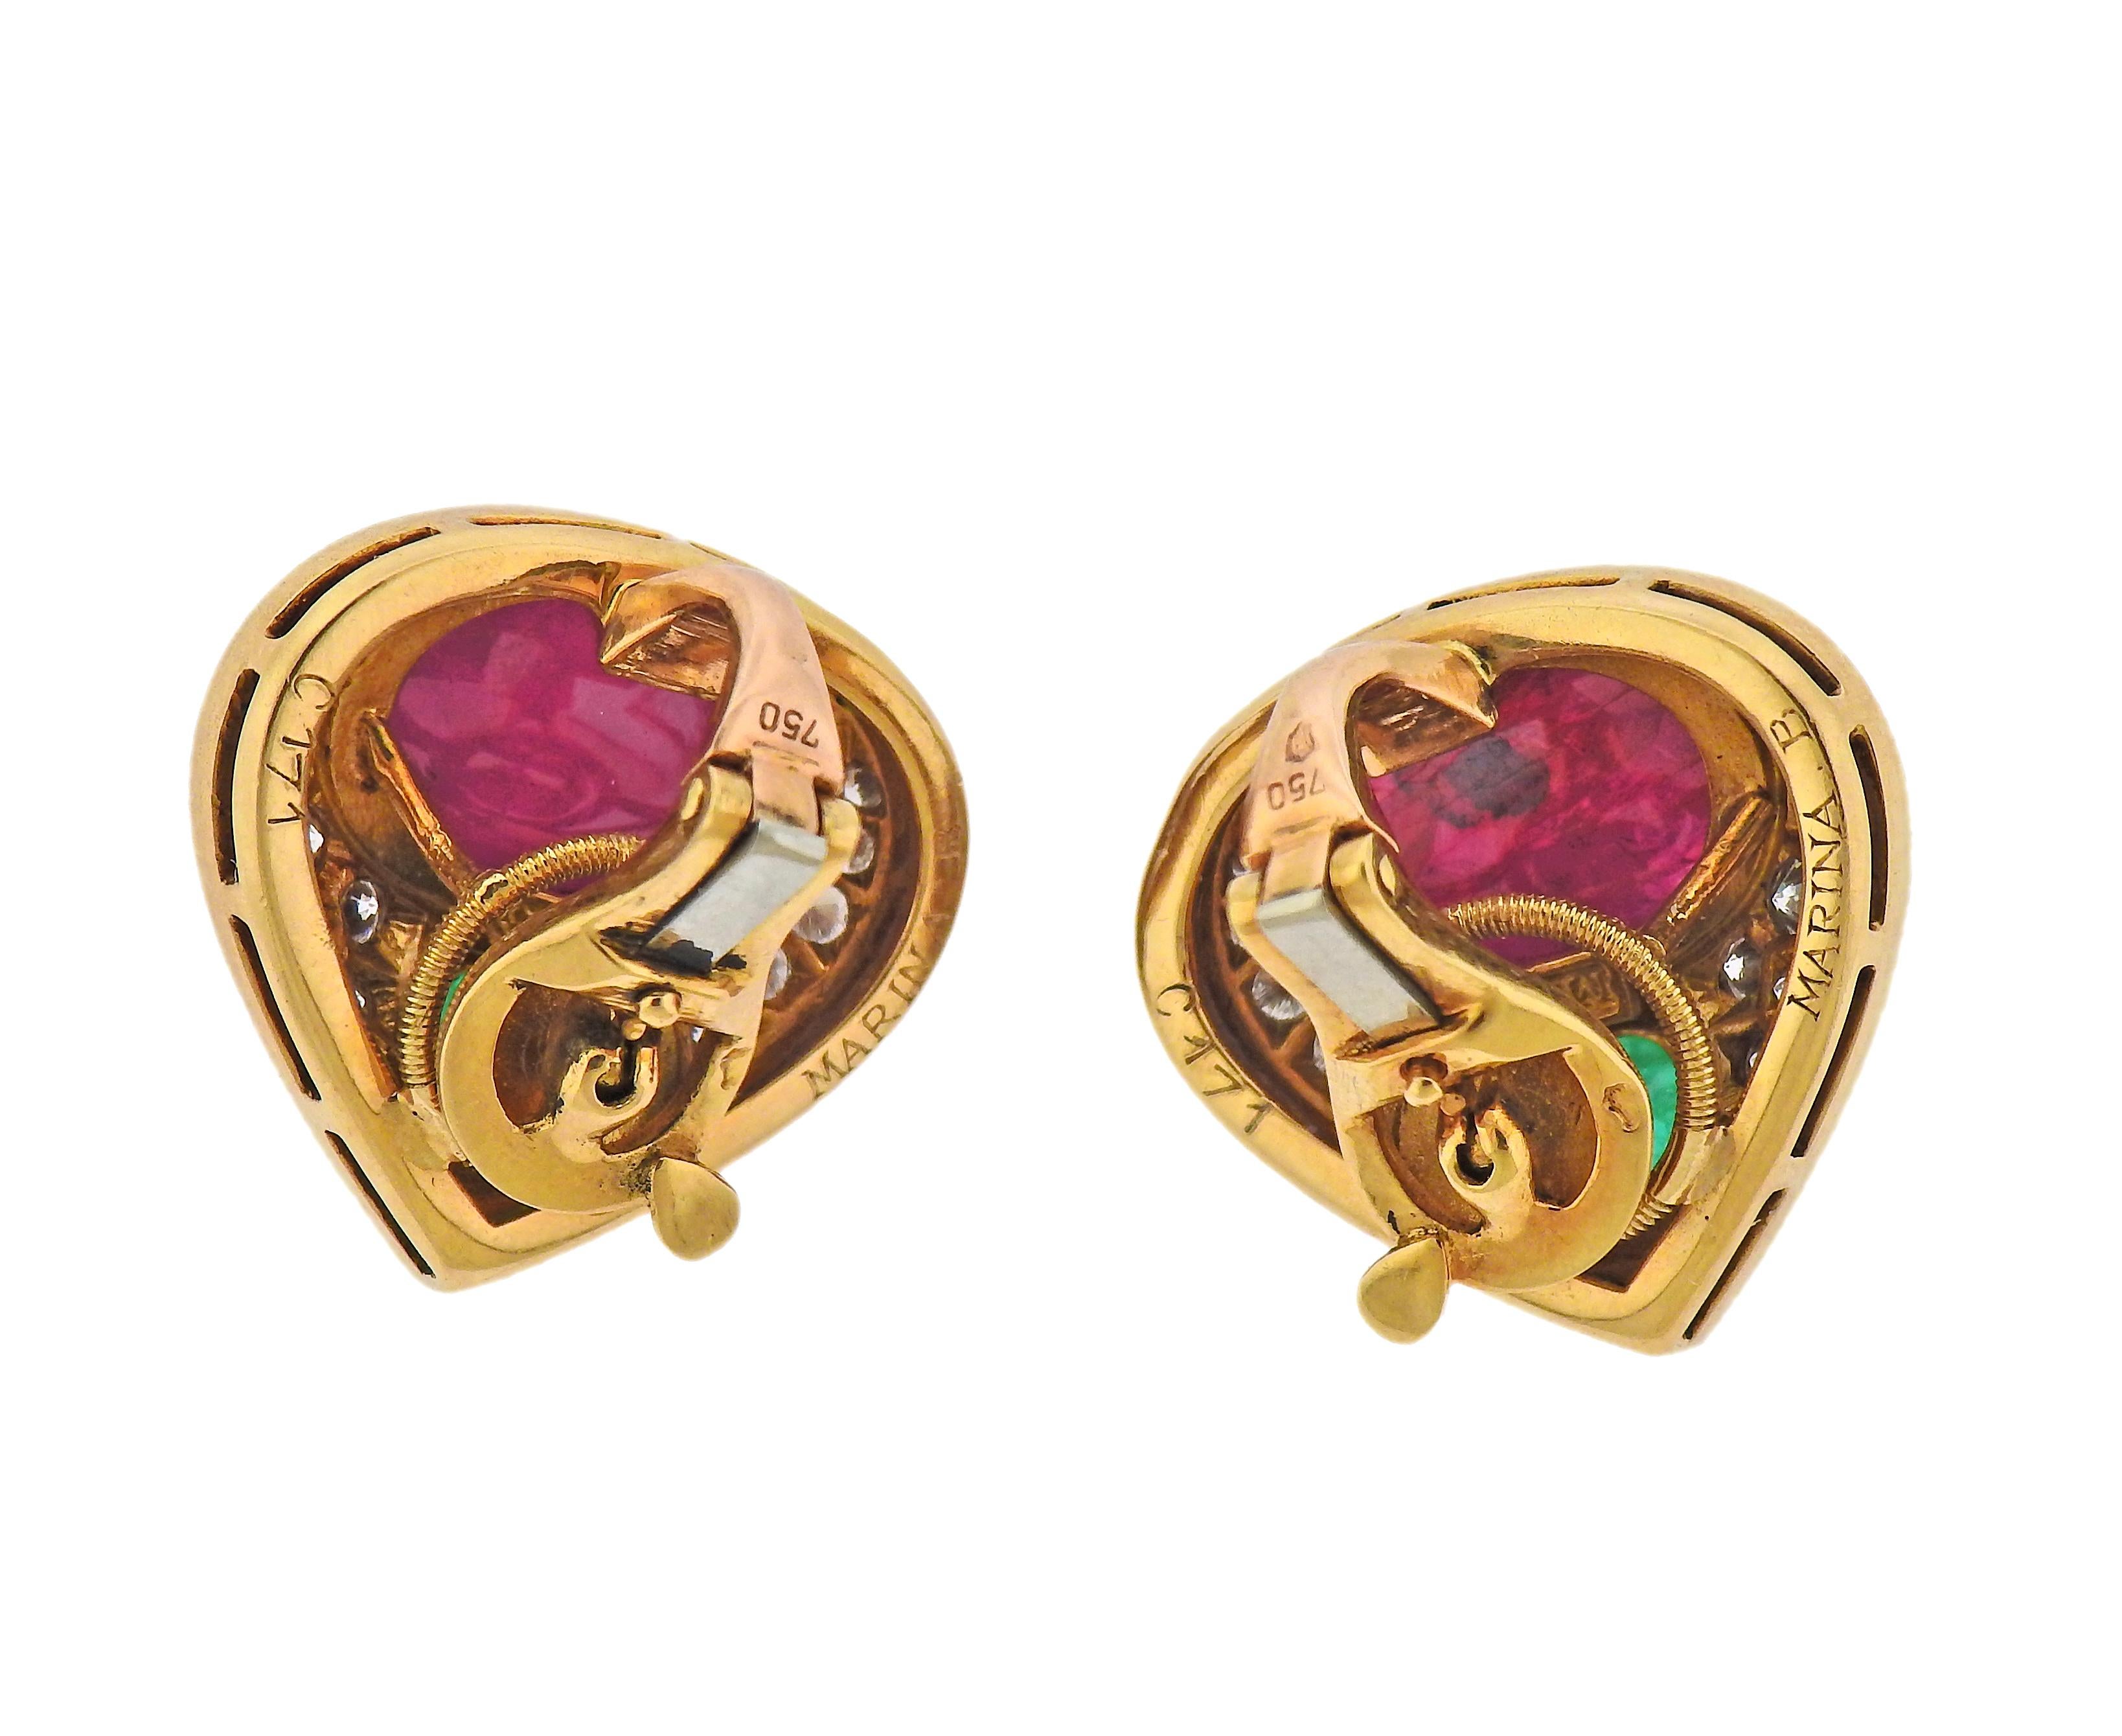 Paar Ohrringe aus 18 Karat Gelbgold von Marina B, mit Rubin- und Smaragd-Cabochons und ca. 1,00cts Diamanten. Die Ohrringe sind 20 mm x 20 mm groß. Markiert: Marina B, C171, 750. Gewicht - 18,3 Gramm. 